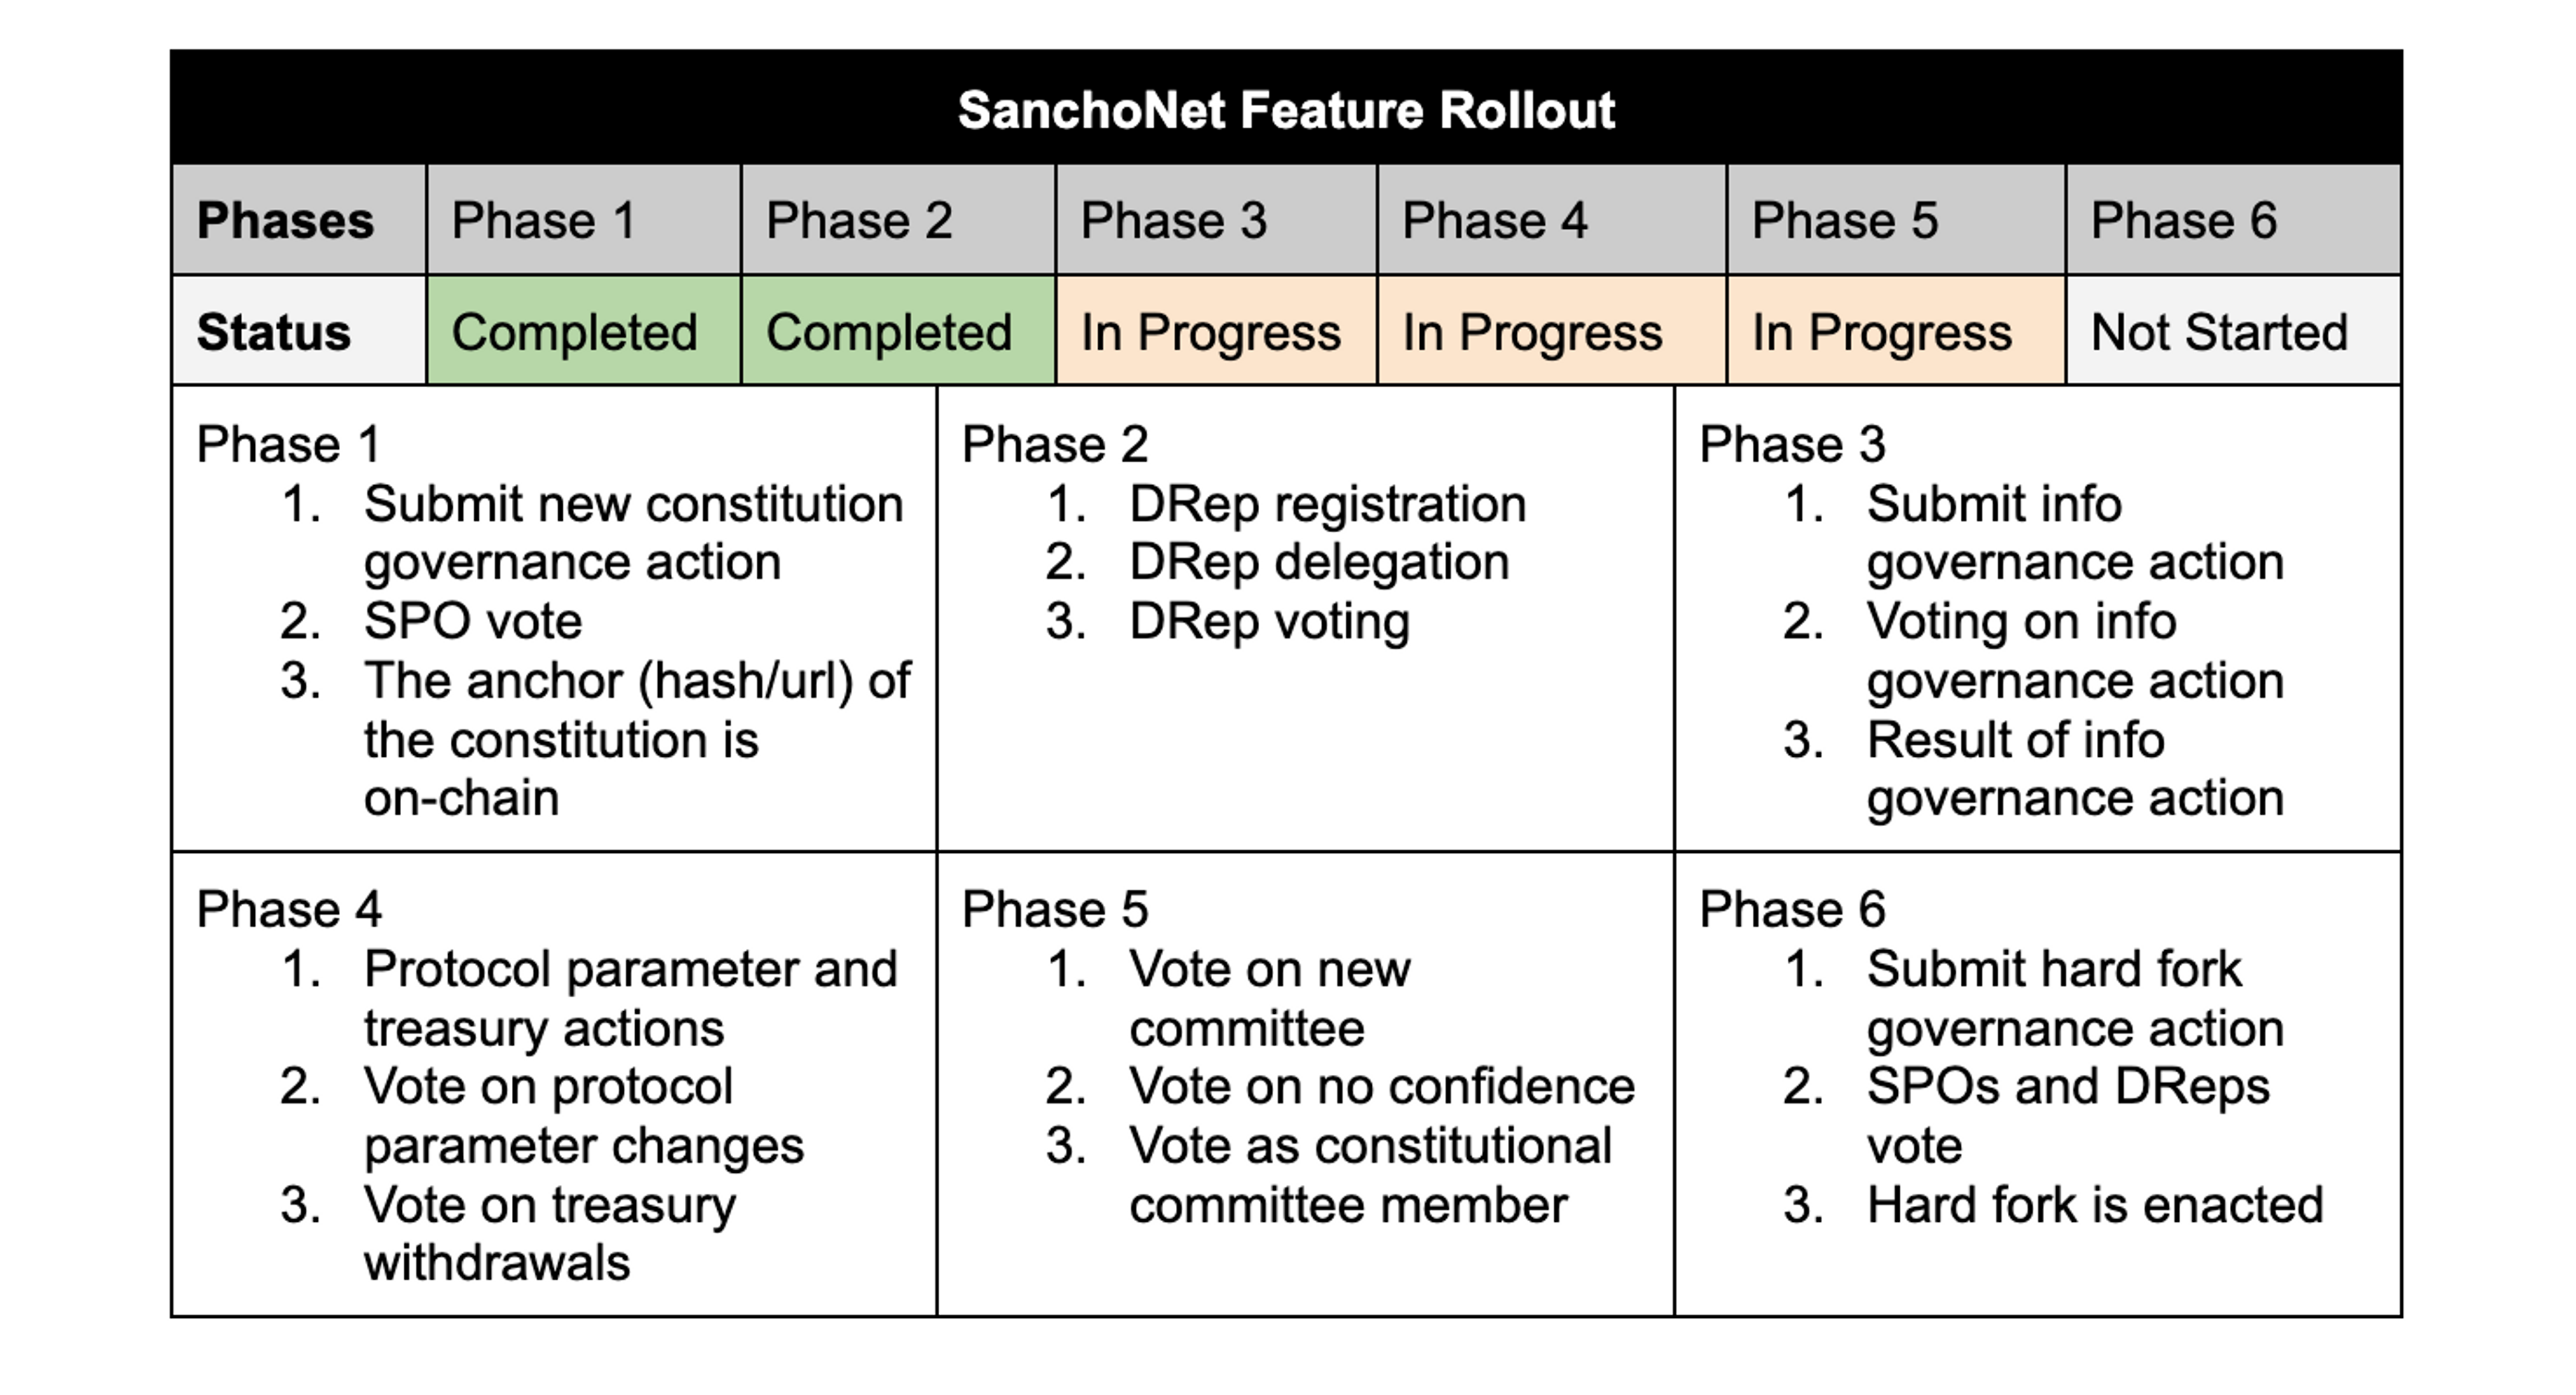 SanchoNet Feature Rollout